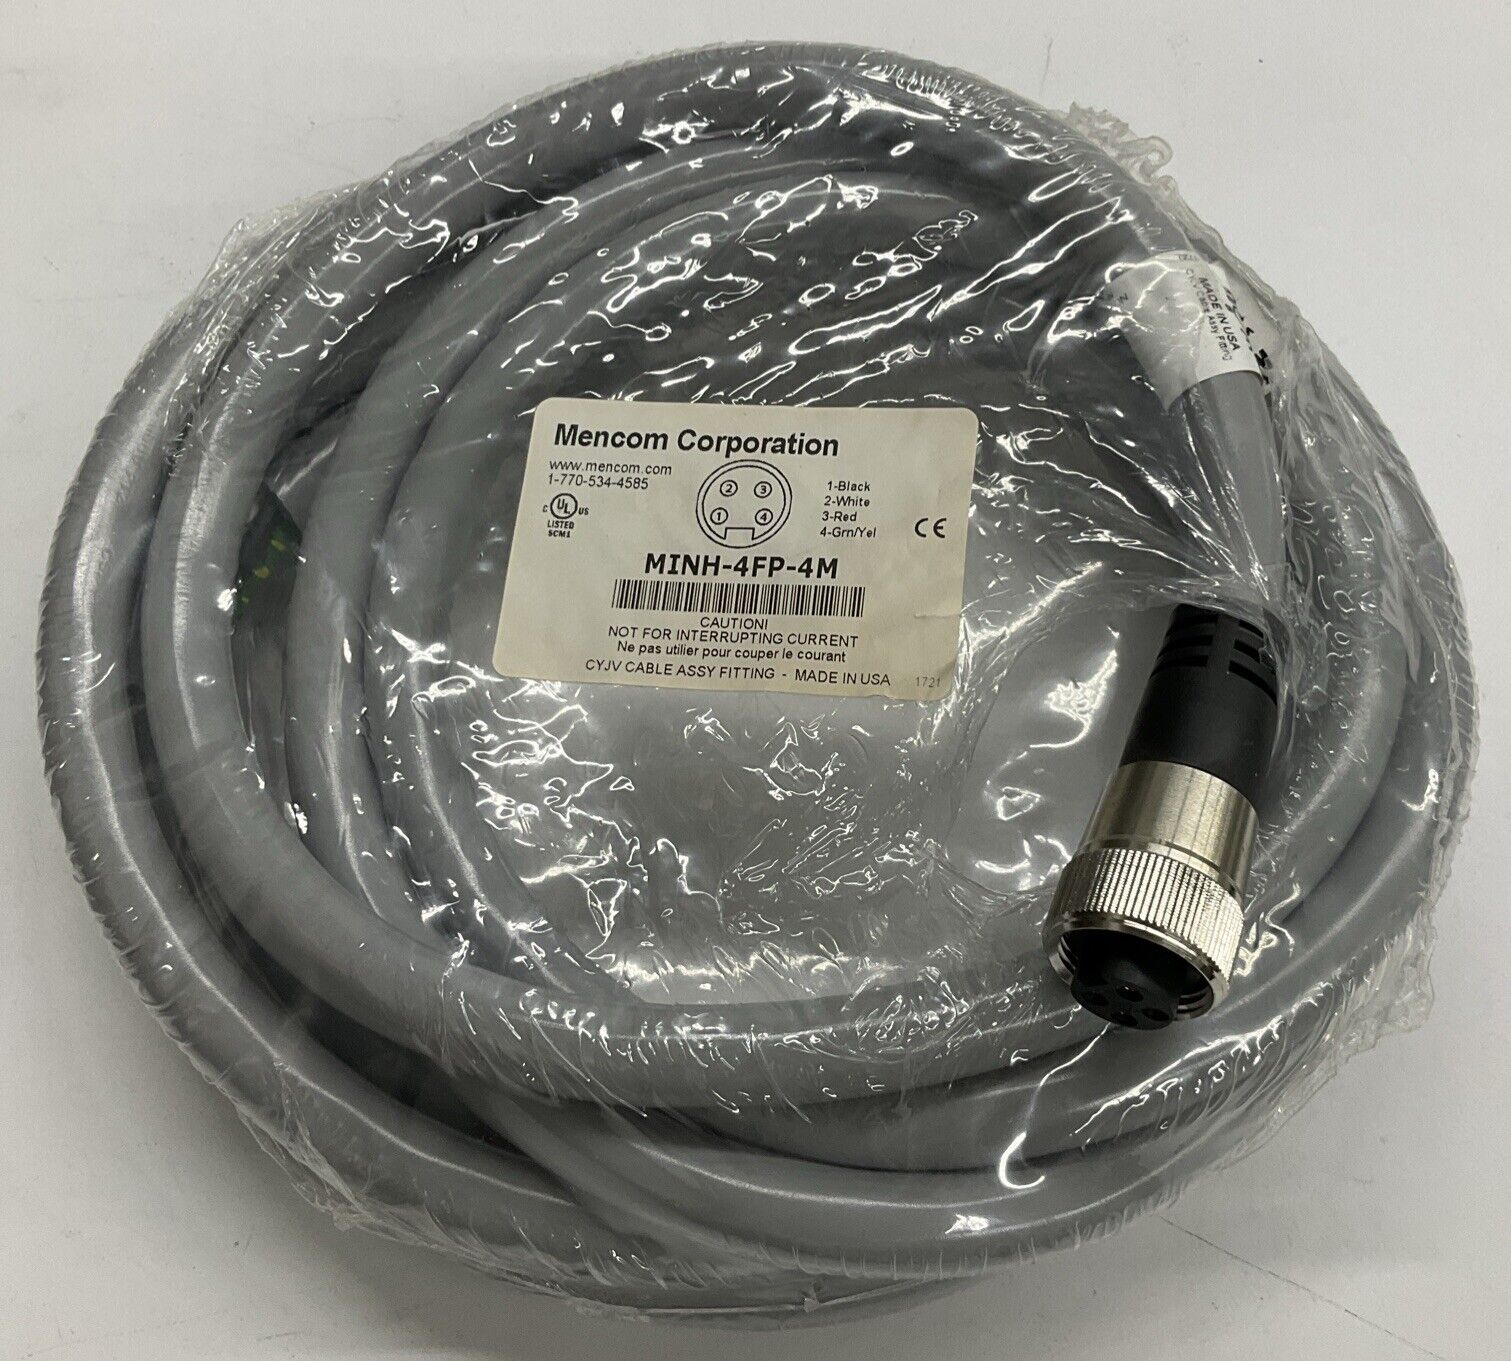 Mencom MINH-4FP-4M 7/8" Mini, Female, 4-Pole, 4-Meter Cable (CBL 117)